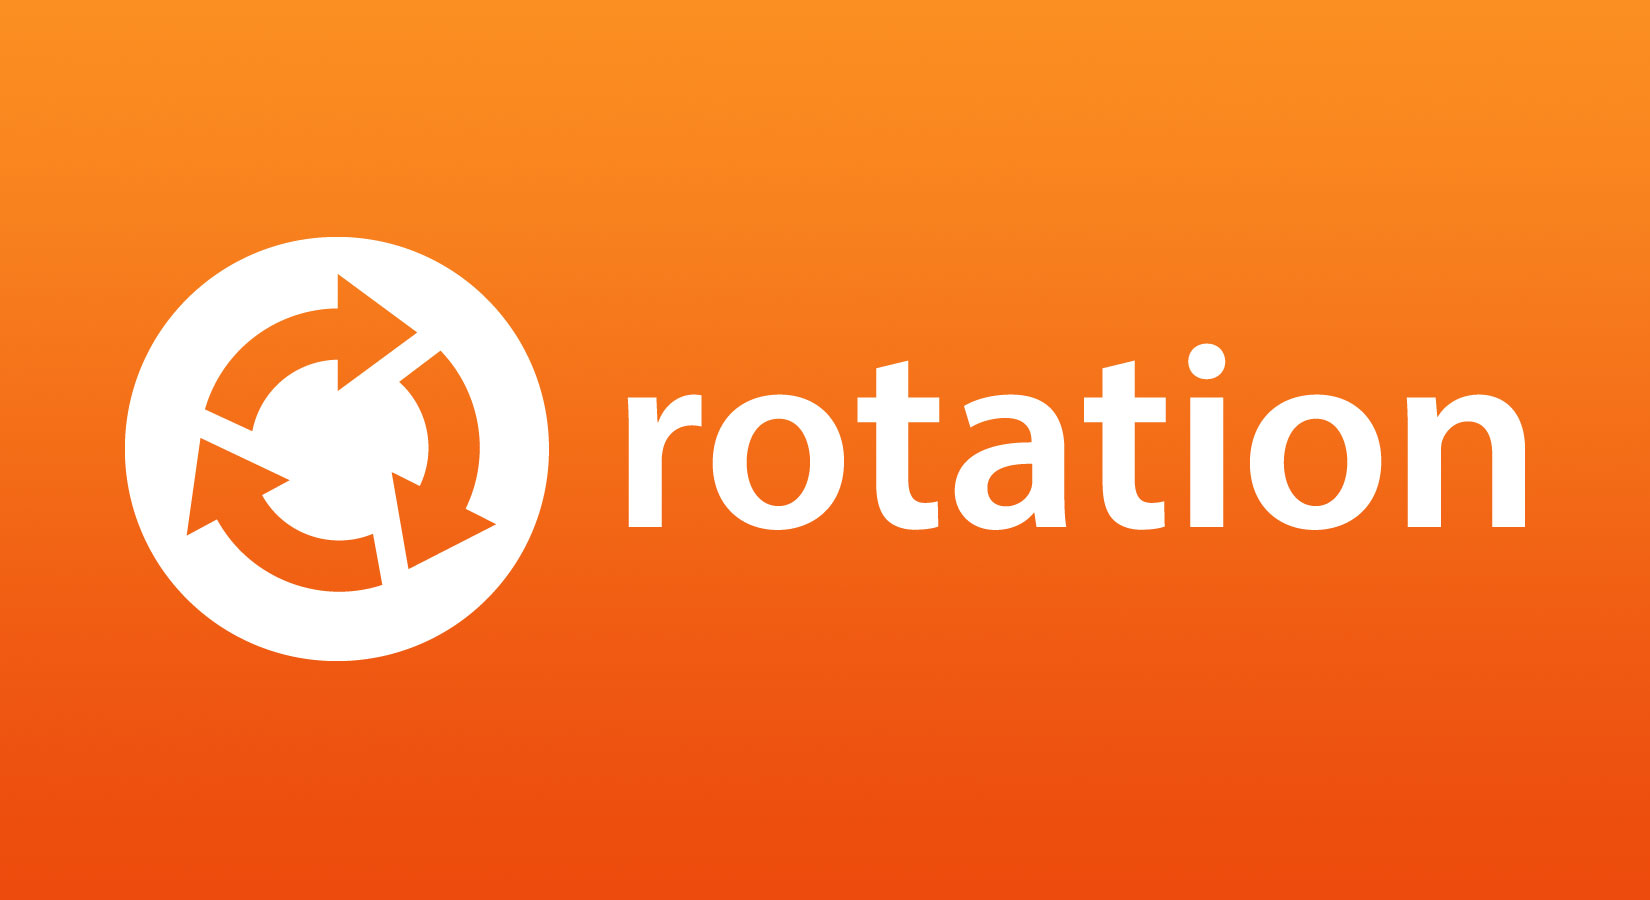 Rotation - Byt in din gamla enhet när du köper en ny